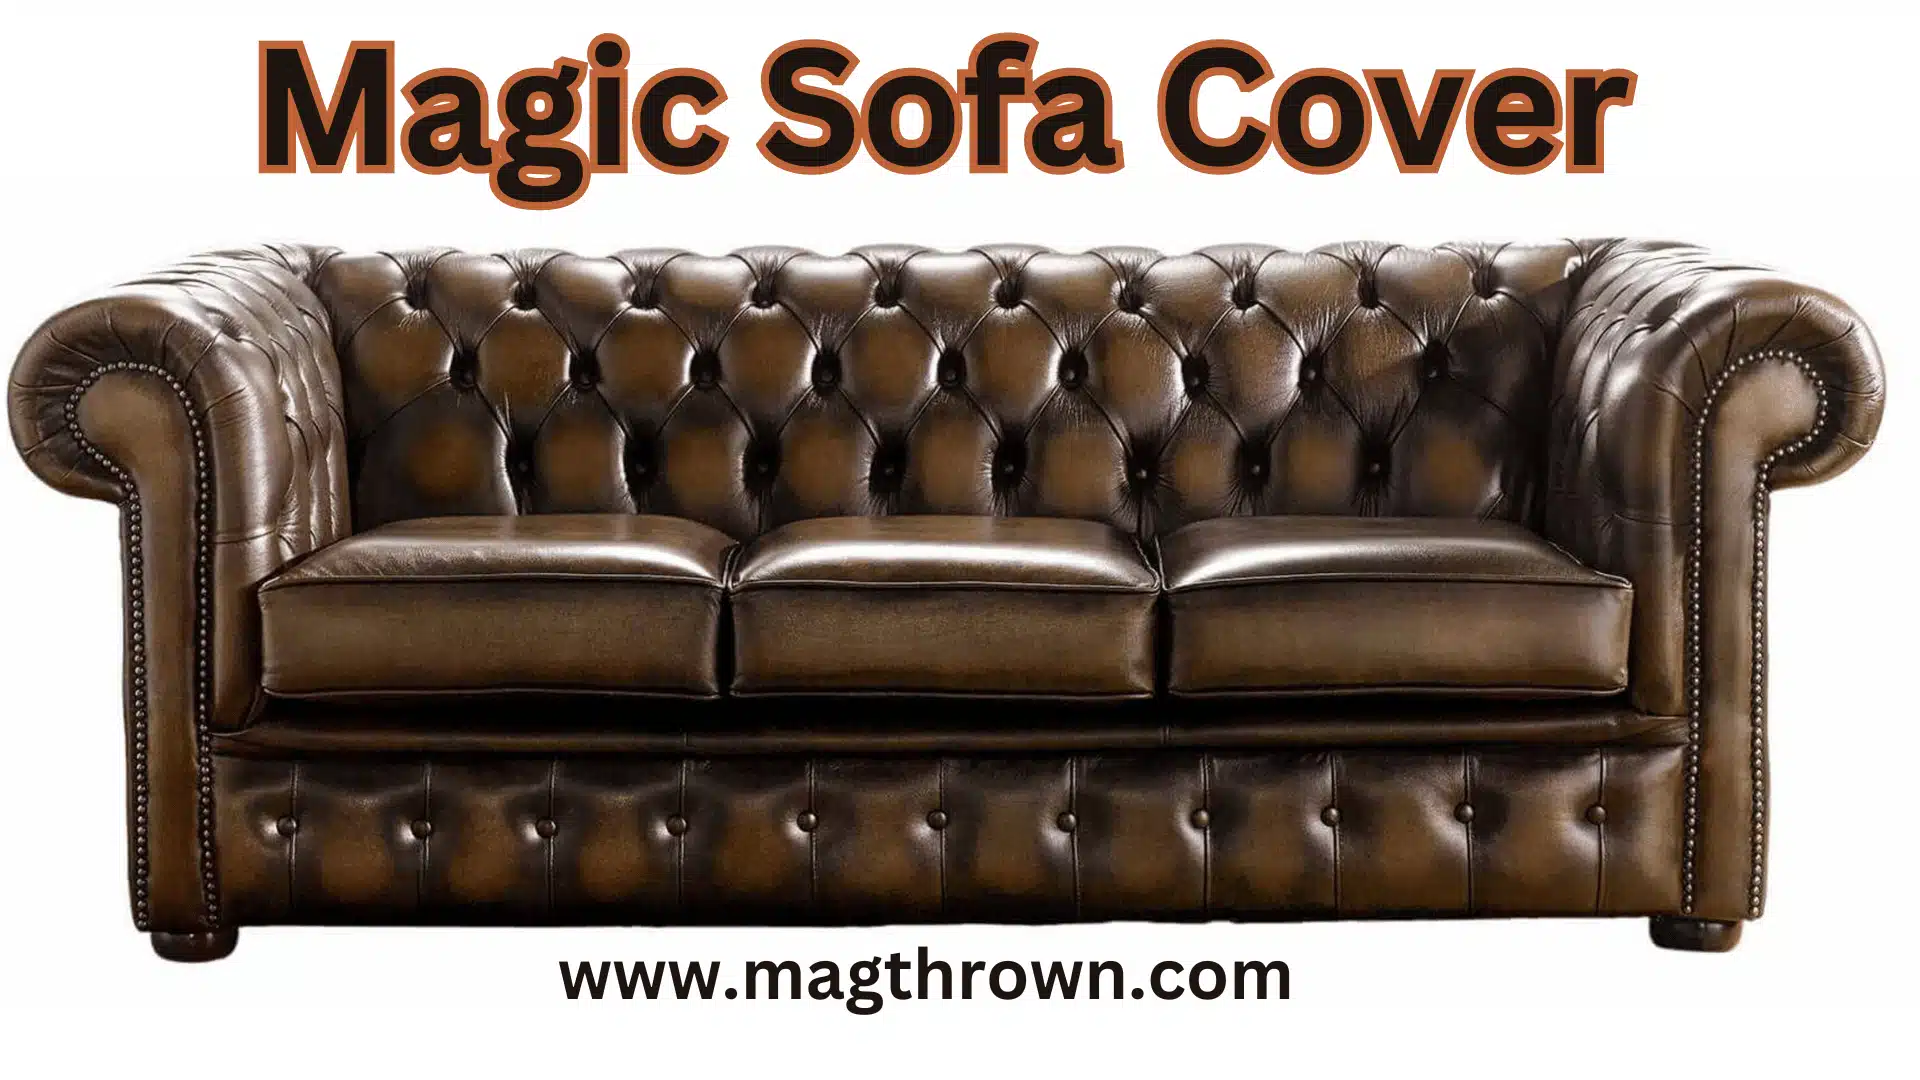 Magic Sofa Cover